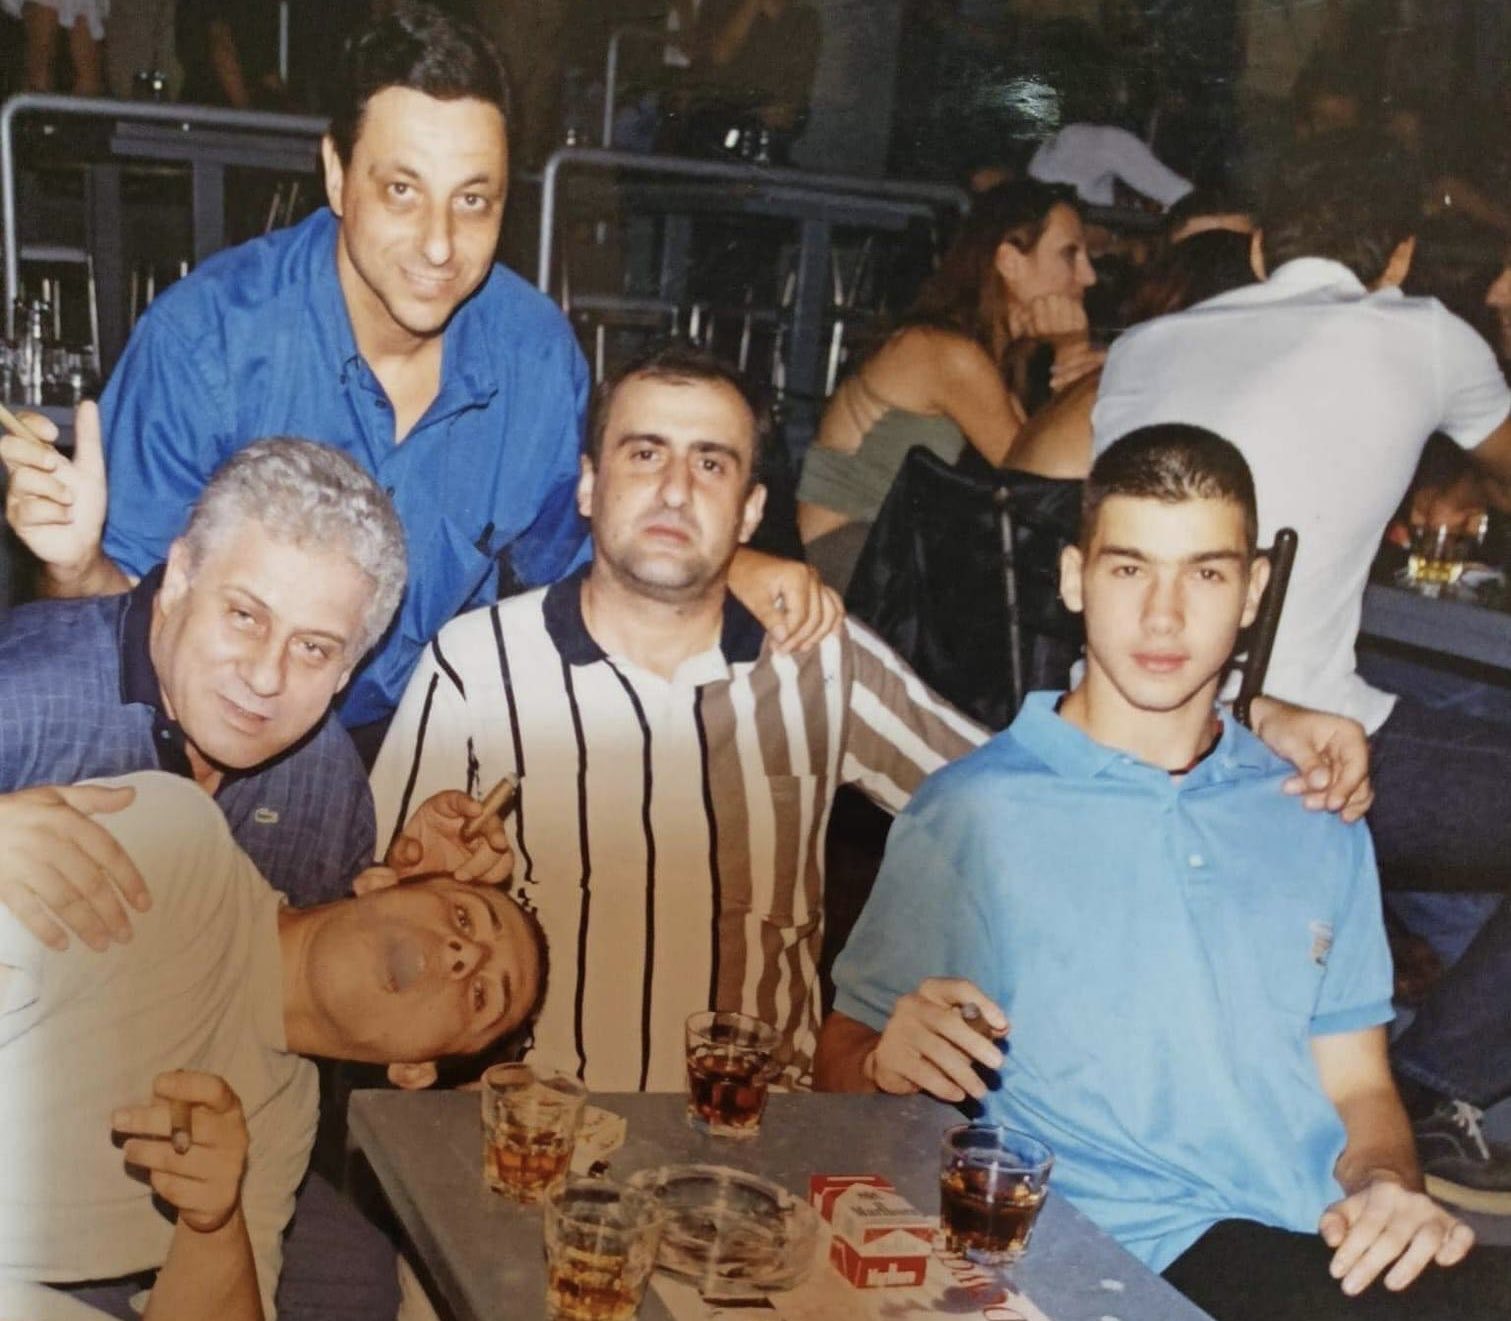 Νίκος Πάκας, Βλάντο Μαιστενκο, Βασίλης Σπανούλης, Κοντονάσιος Γιώργος, Πάλας Αντώνης, σε μαγαζί της Θεσσαλονίκης ακούγοντας Βασίλη Καρρά - 1999 (από το προσωπικό αρχείο του Λαρισαίου δημοσιογράφου Σωτήρη Κέλλα)